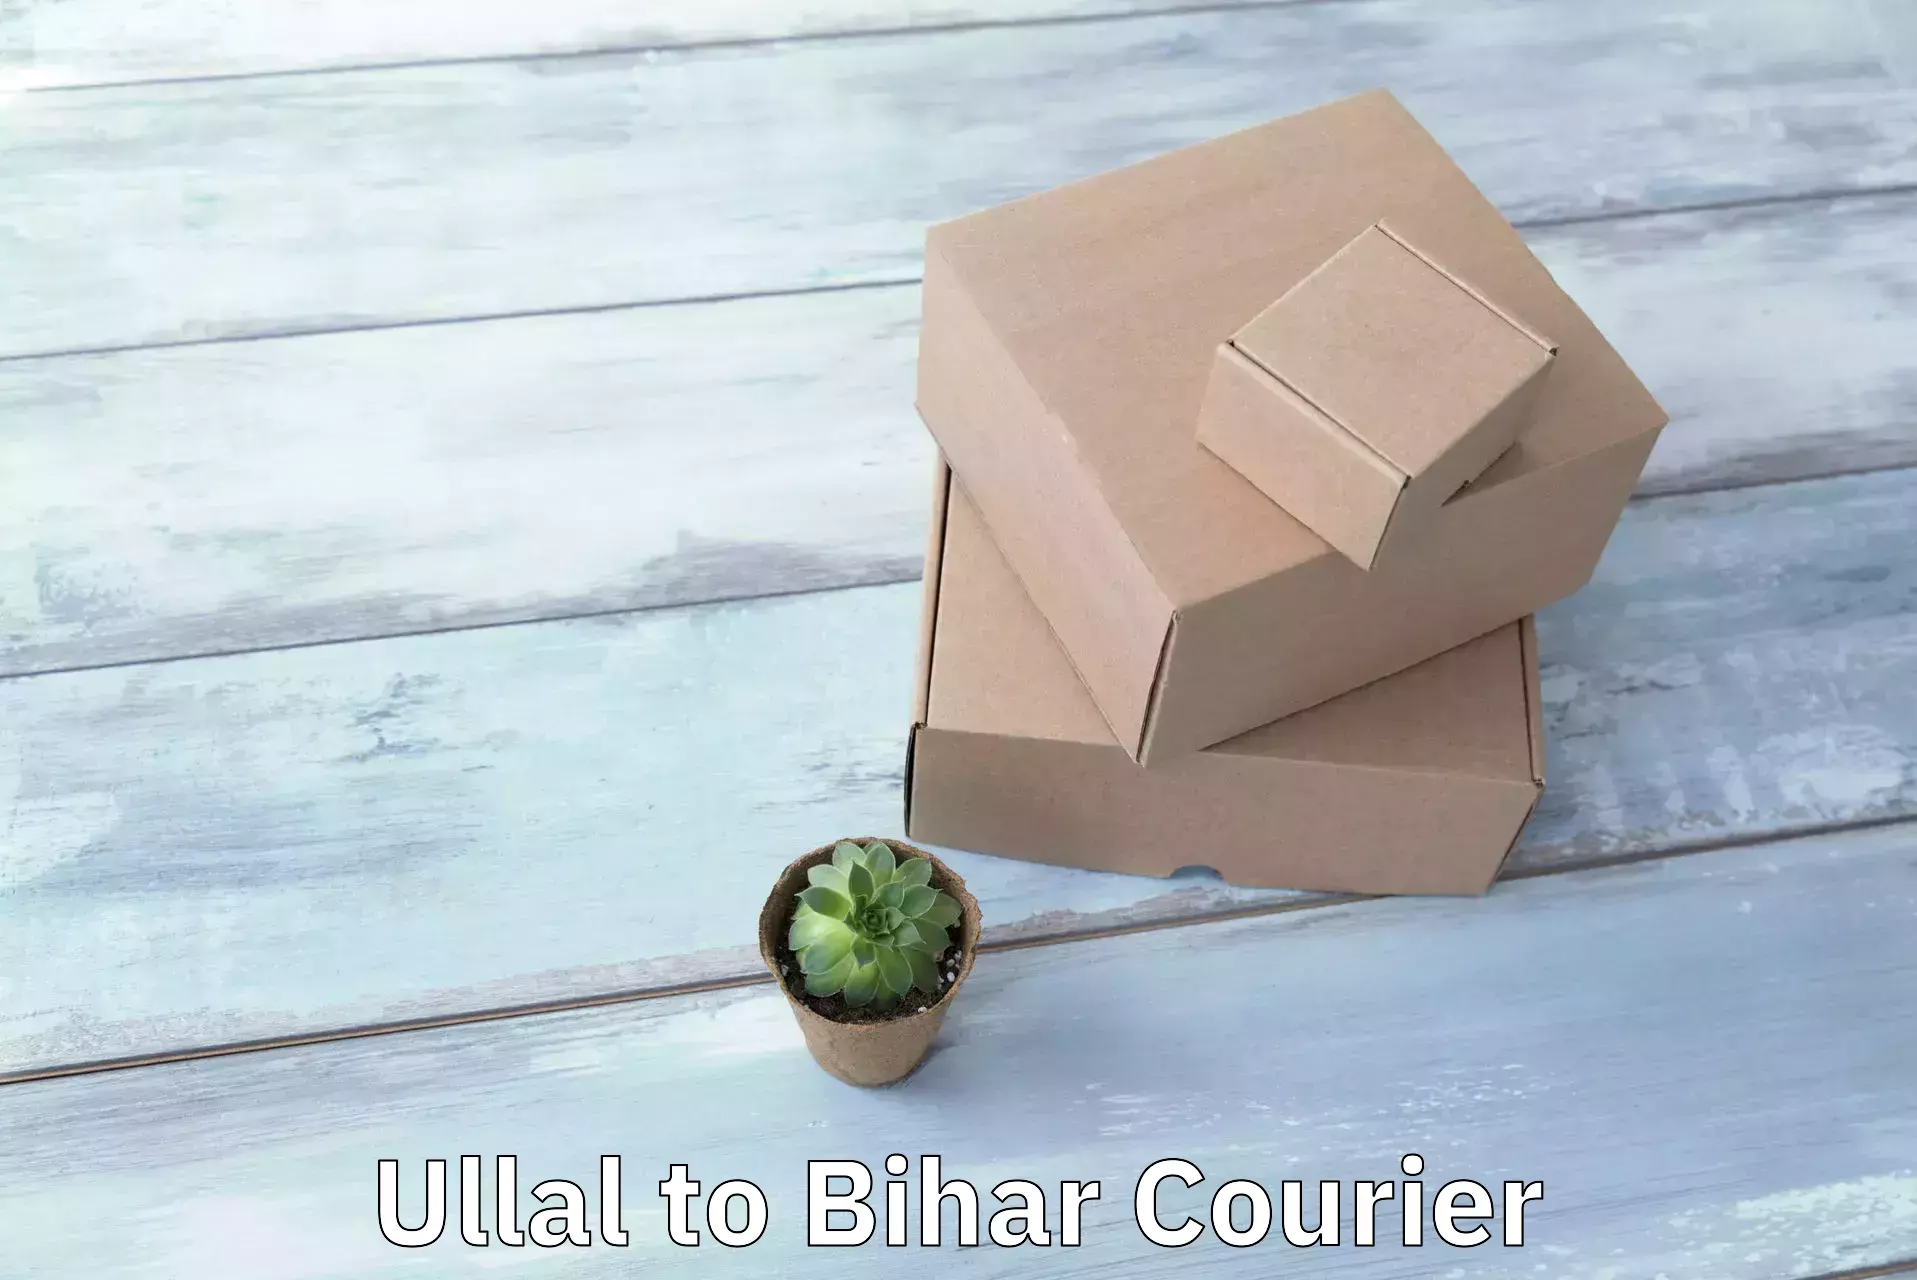 Modern courier technology Ullal to Bettiah